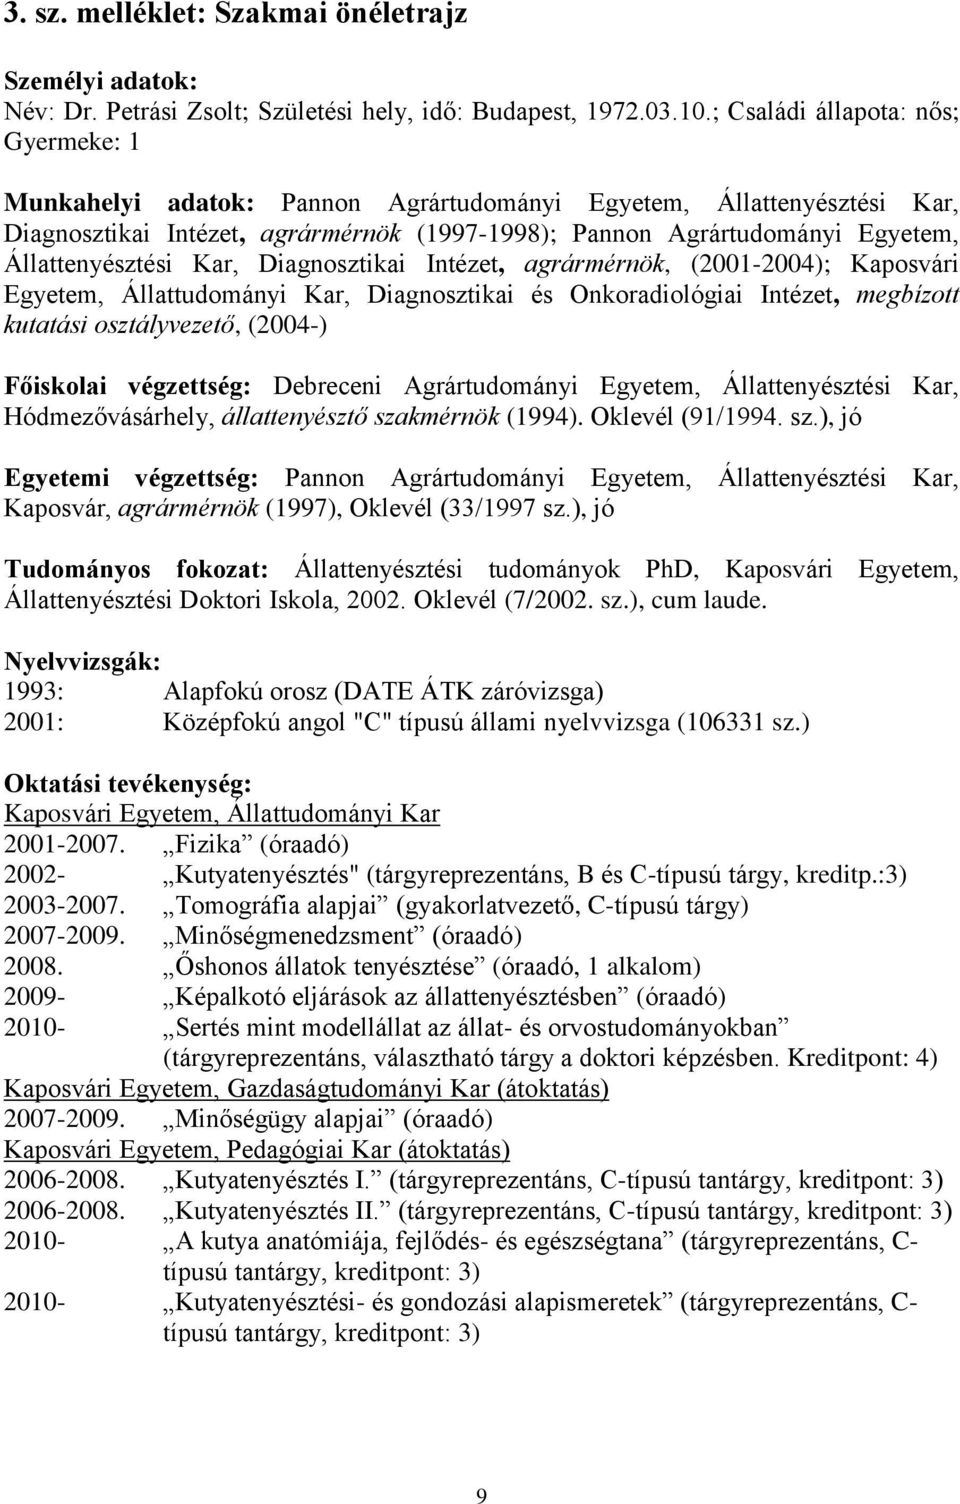 Állattenyésztési Kar, Diagnosztikai Intézet, agrármérnök, (2001-2004); Kaposvári Egyetem, Állattudományi Kar, Diagnosztikai és Onkoradiológiai Intézet, megbízott kutatási osztályvezető, (2004-)